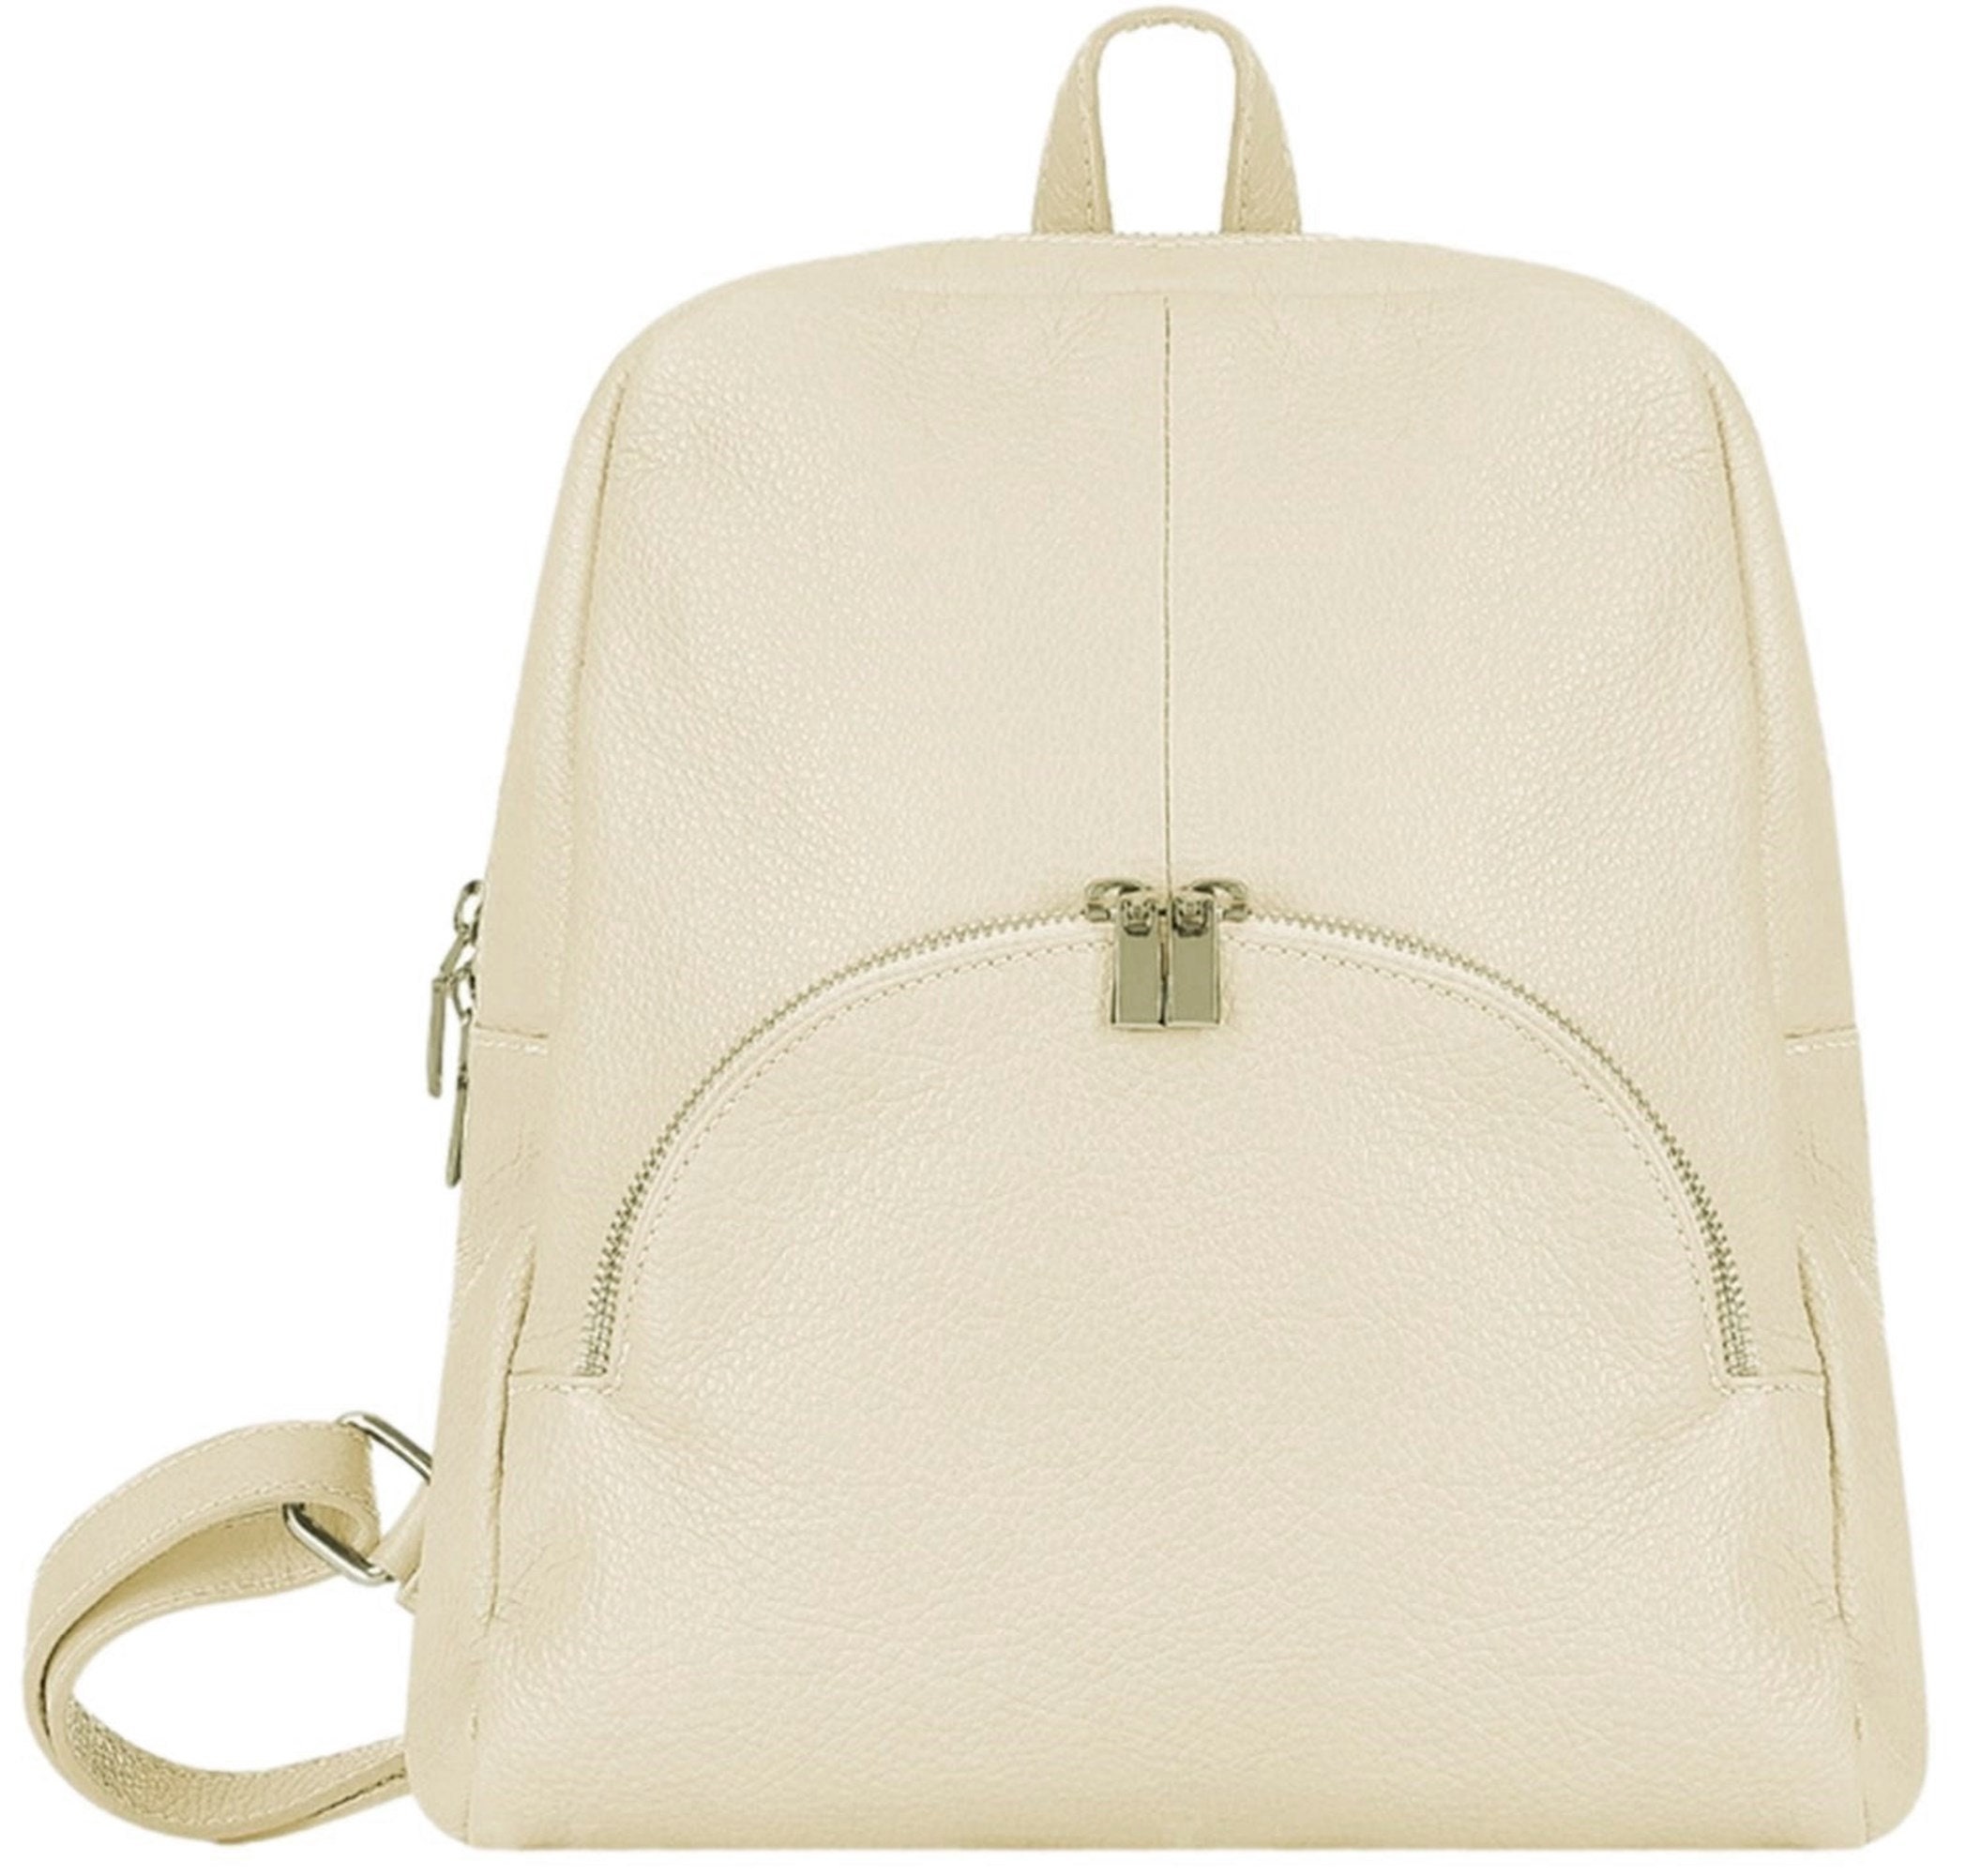 Rucksack Backpack 3 in 1 Italian Soft Leather Shoulder Top - Etsy UK